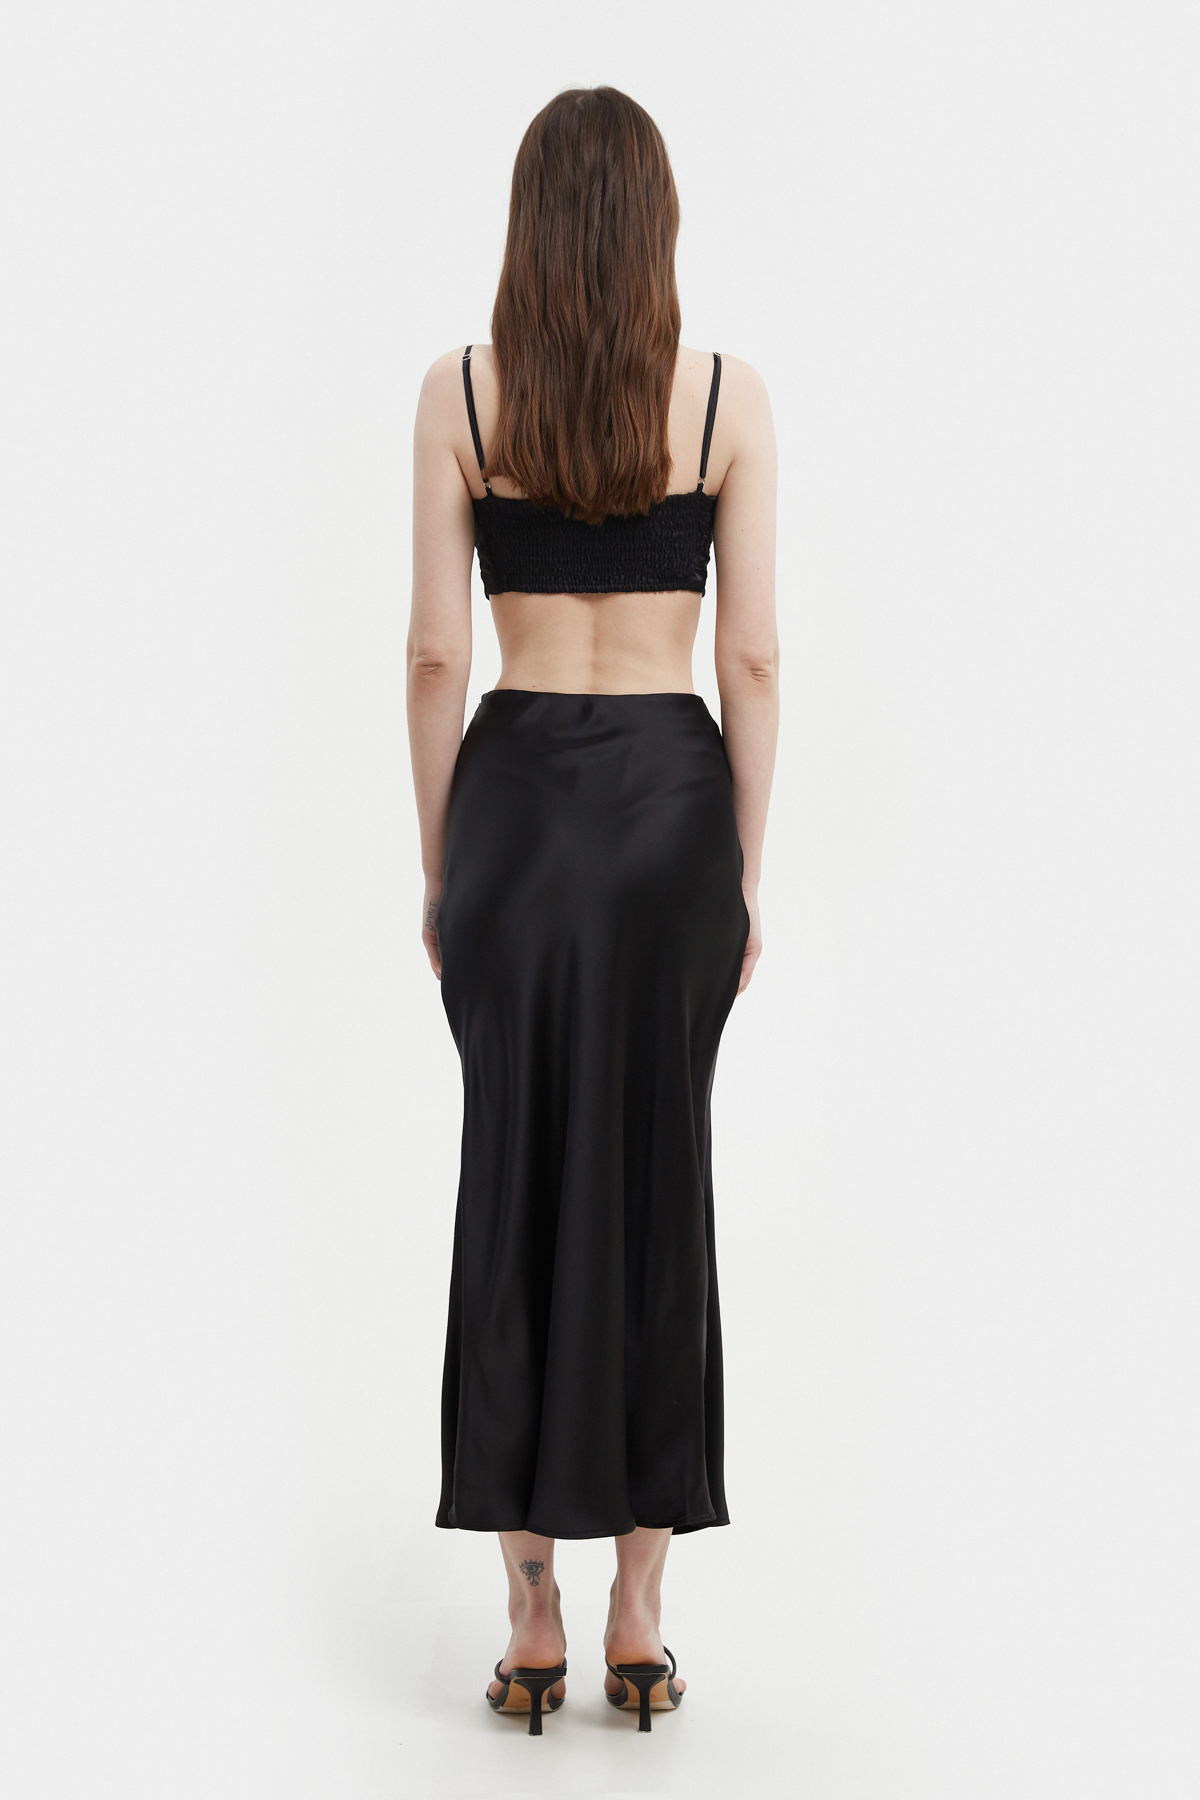 Black satin midi skirt, photo 4